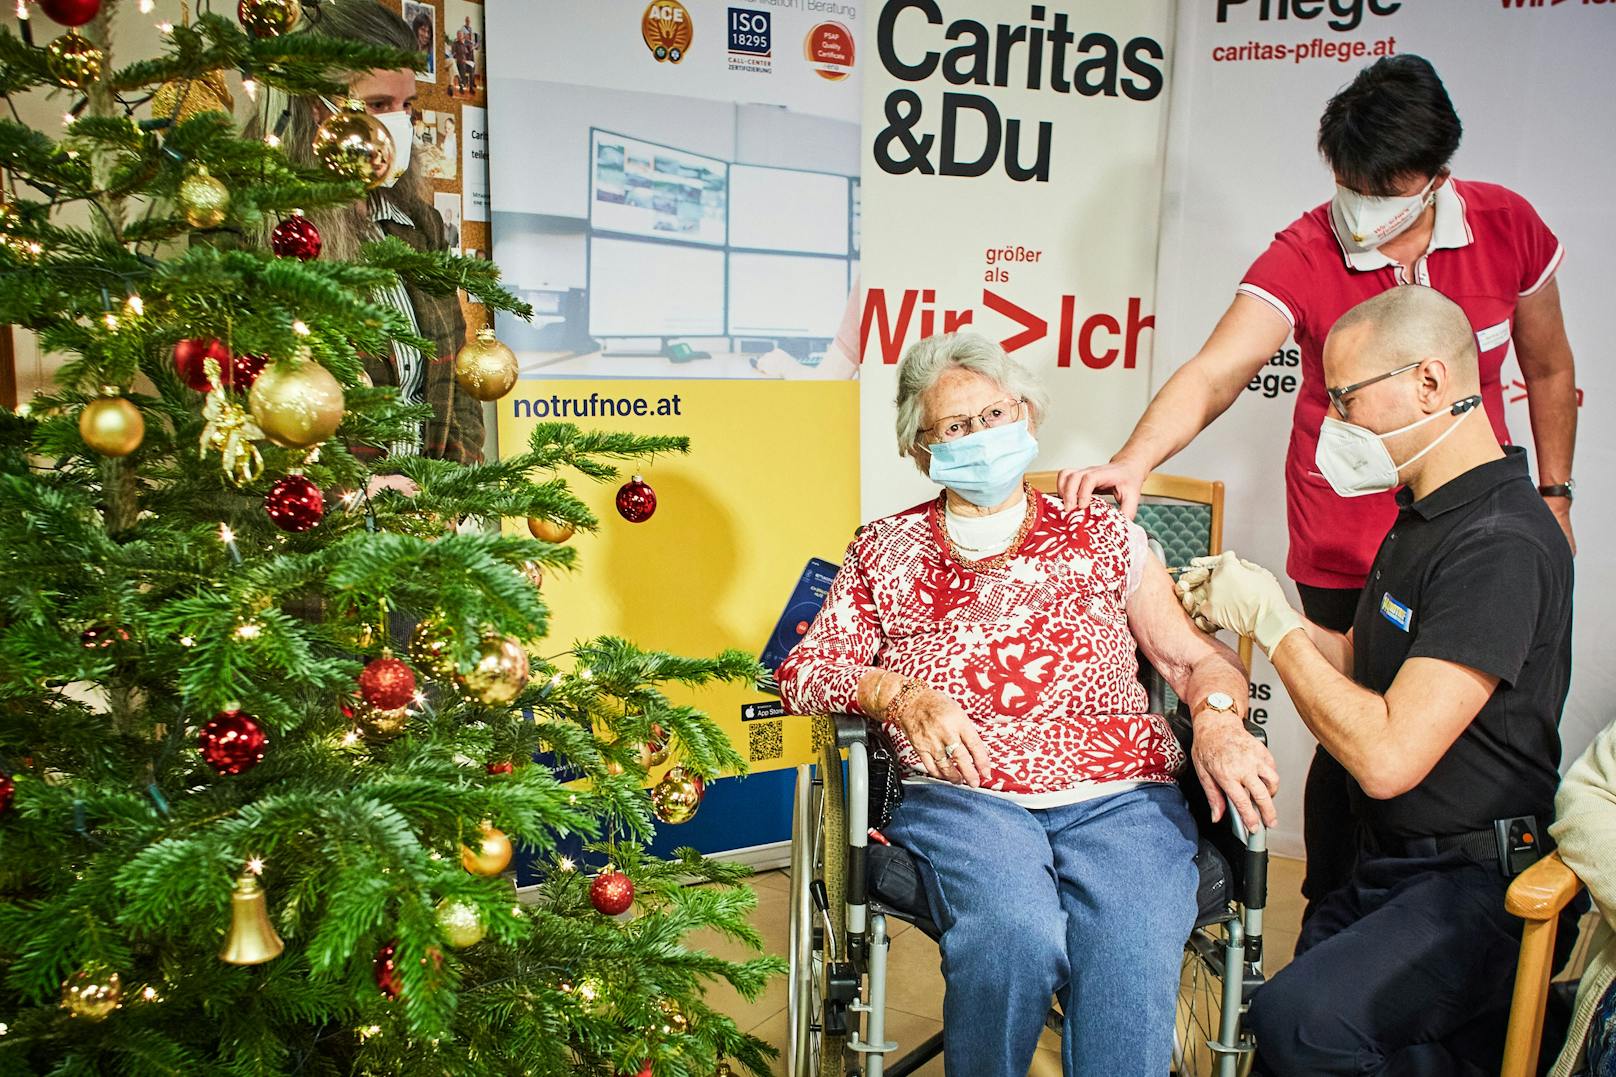 Impfung in Caritas-Pflegeheim in St. Pölten: Elfriede Höllriegel (86-jährige Bewohnerin) und Dr. Christian Fohringer, medizinischer Leiter Notruf NÖ